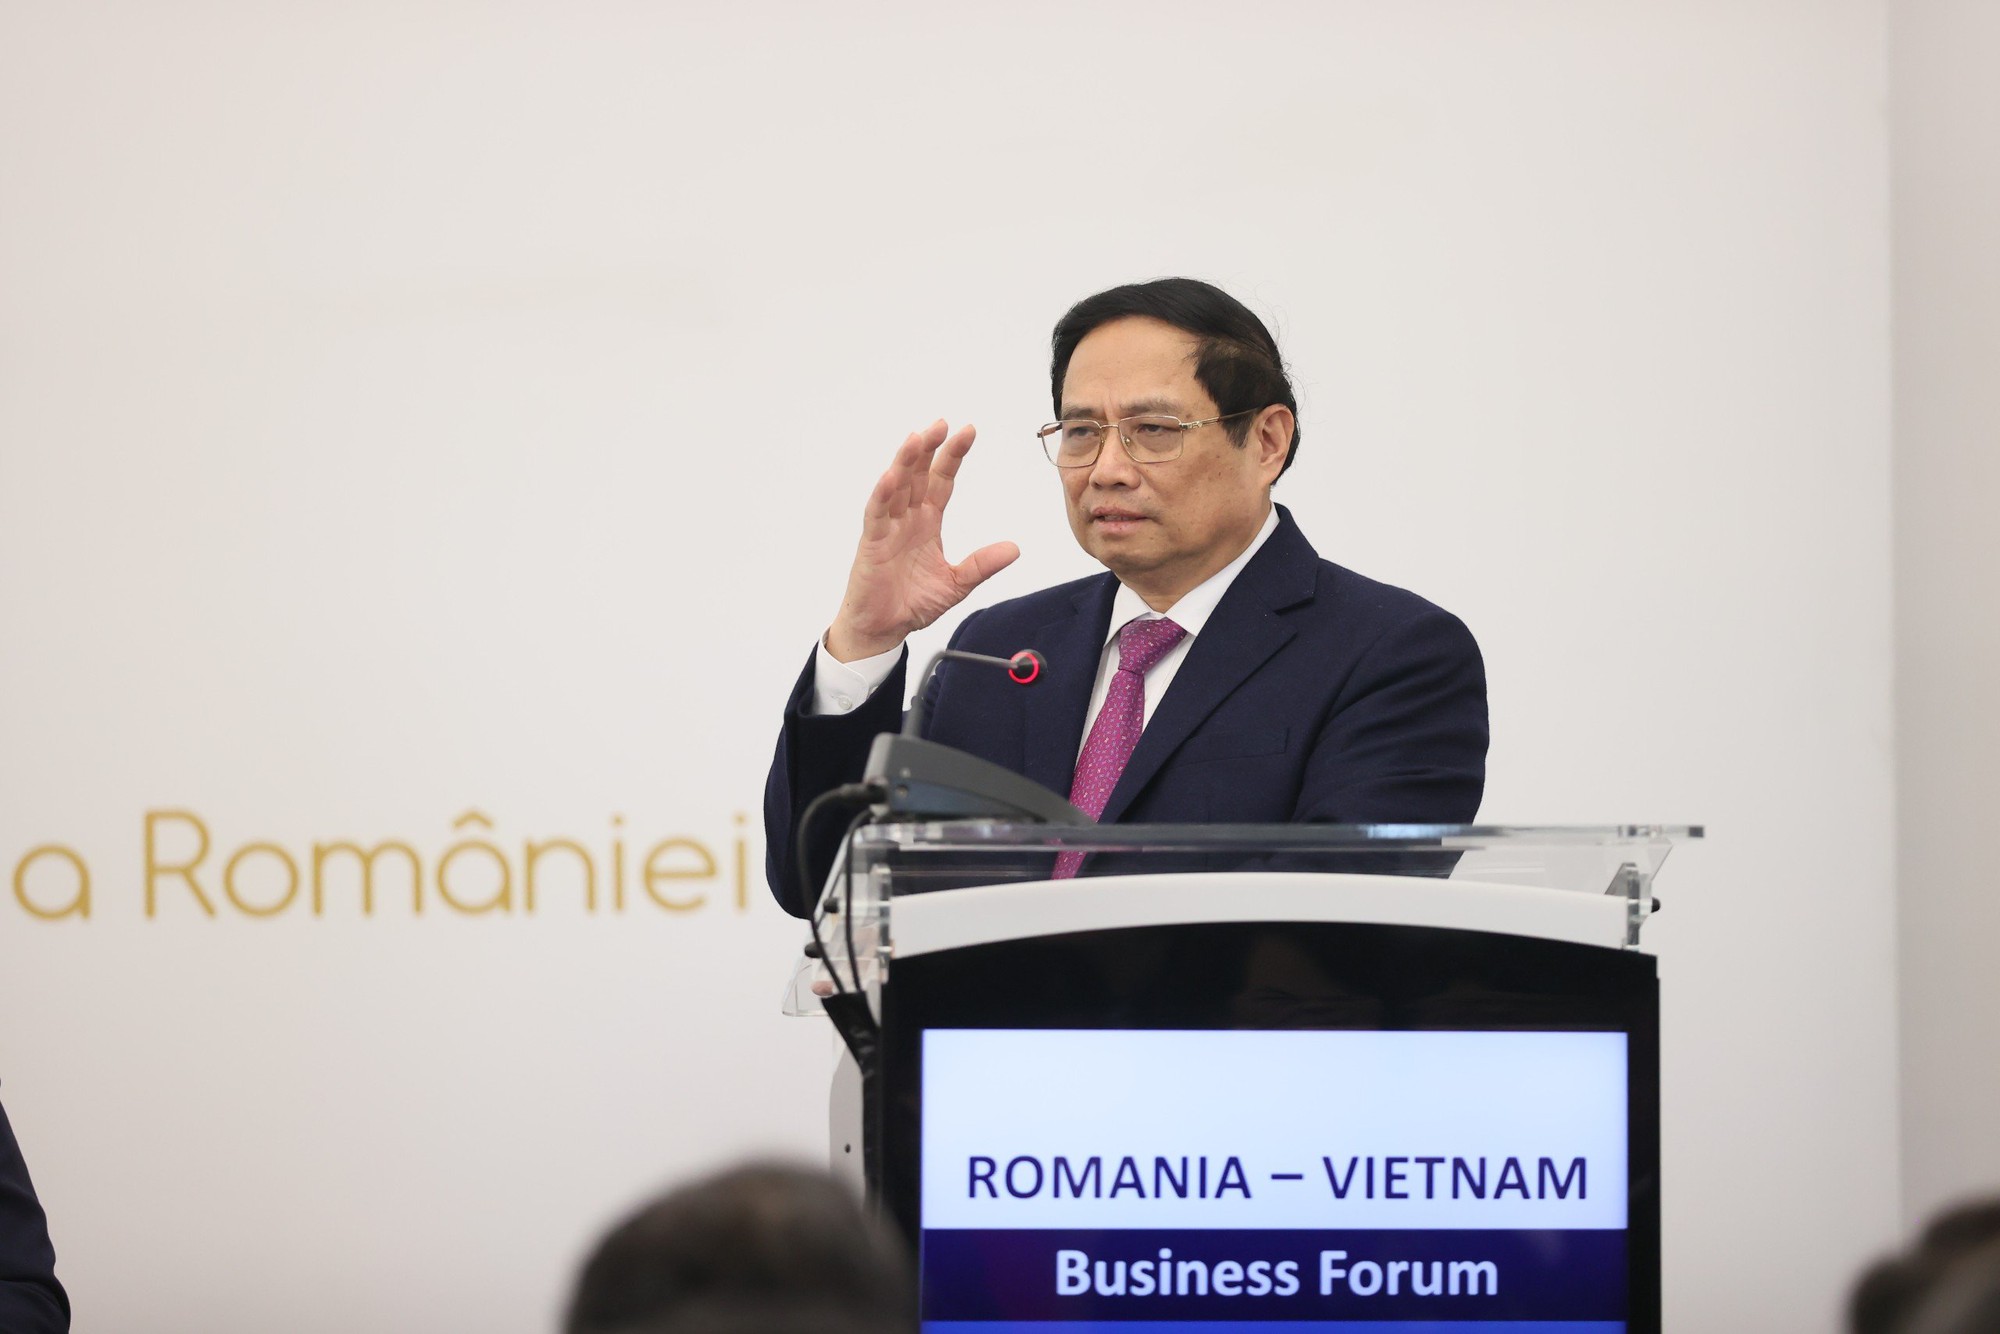 Thủ tướng khẳng định, với quan điểm ""lợi ích hài hòa, rủi ro chia sẻ", Chính phủ Việt Nam luôn lắng nghe, đồng hành, hỗ trợ và tạo mọi điều kiện thuận lợi để các doanh nghiệp nước ngoài nói chung và các doanh nghiệp Romania đầu tư kinh doanh hiệu quả, lâu dài và bền vững tại Việt Nam - Ảnh: VGP/Nhật Bắc